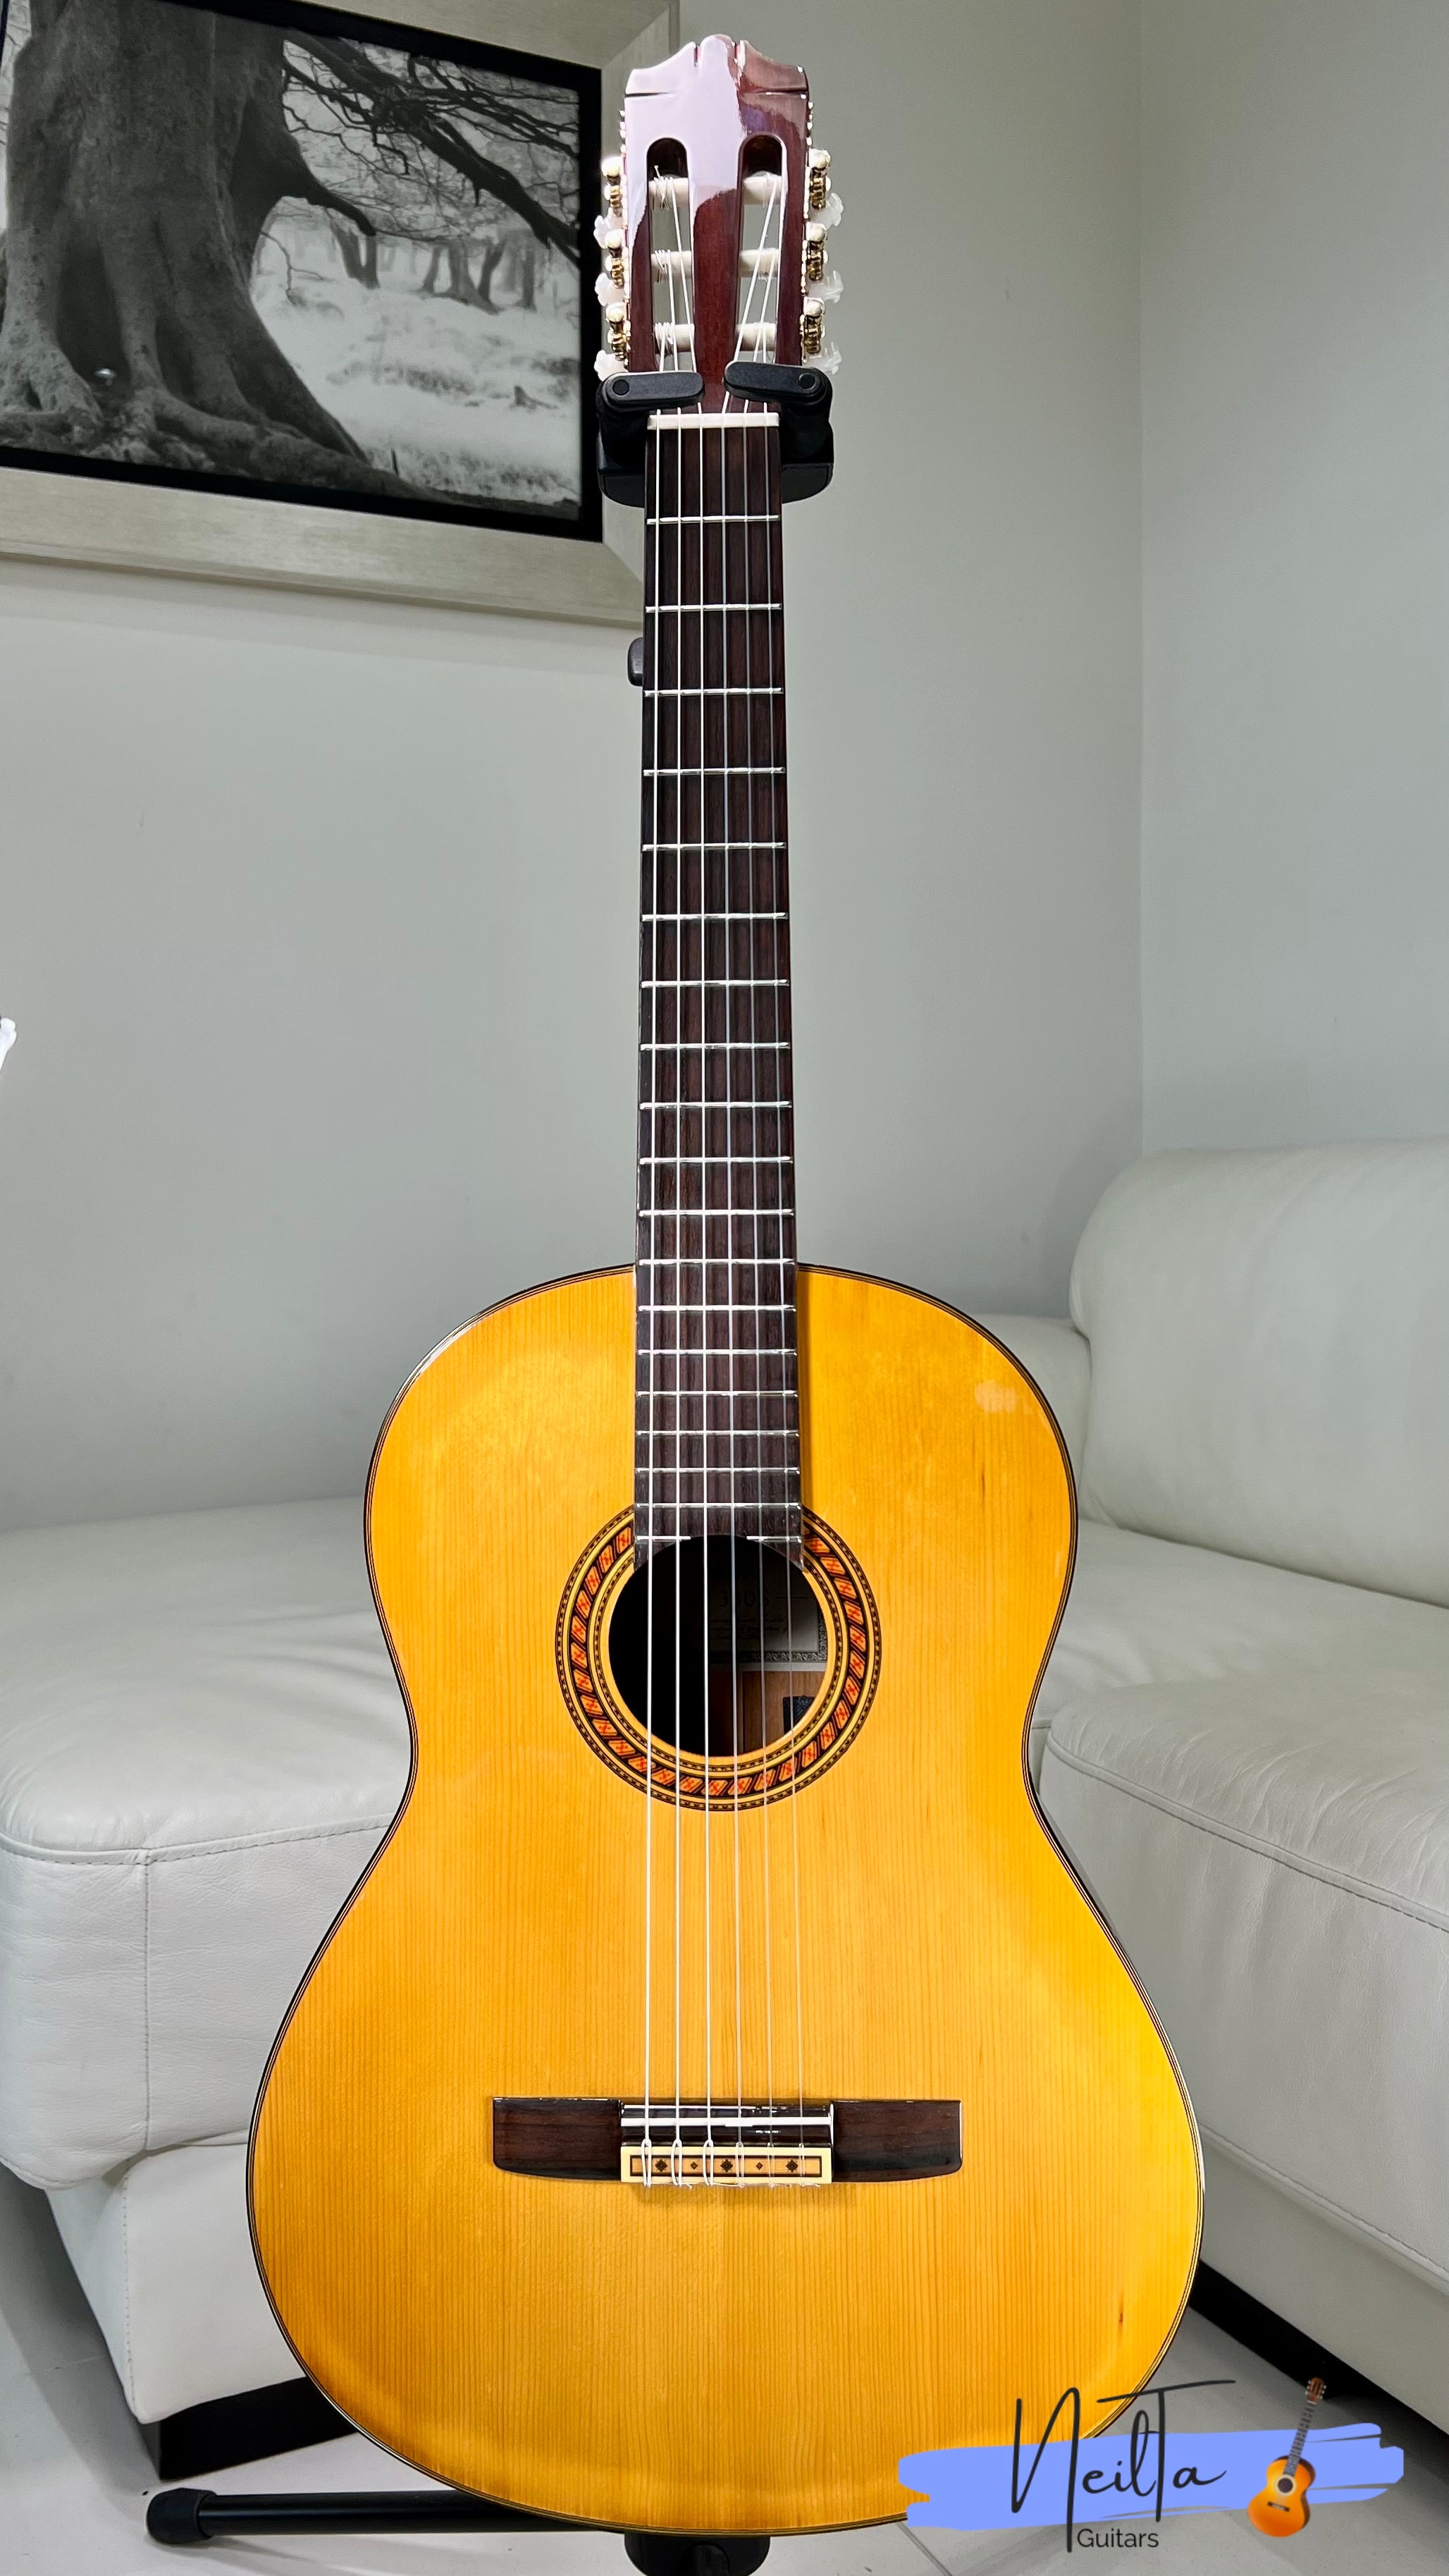 ヤマハCG-150SA 単板ギター美品です。 - 楽器/器材